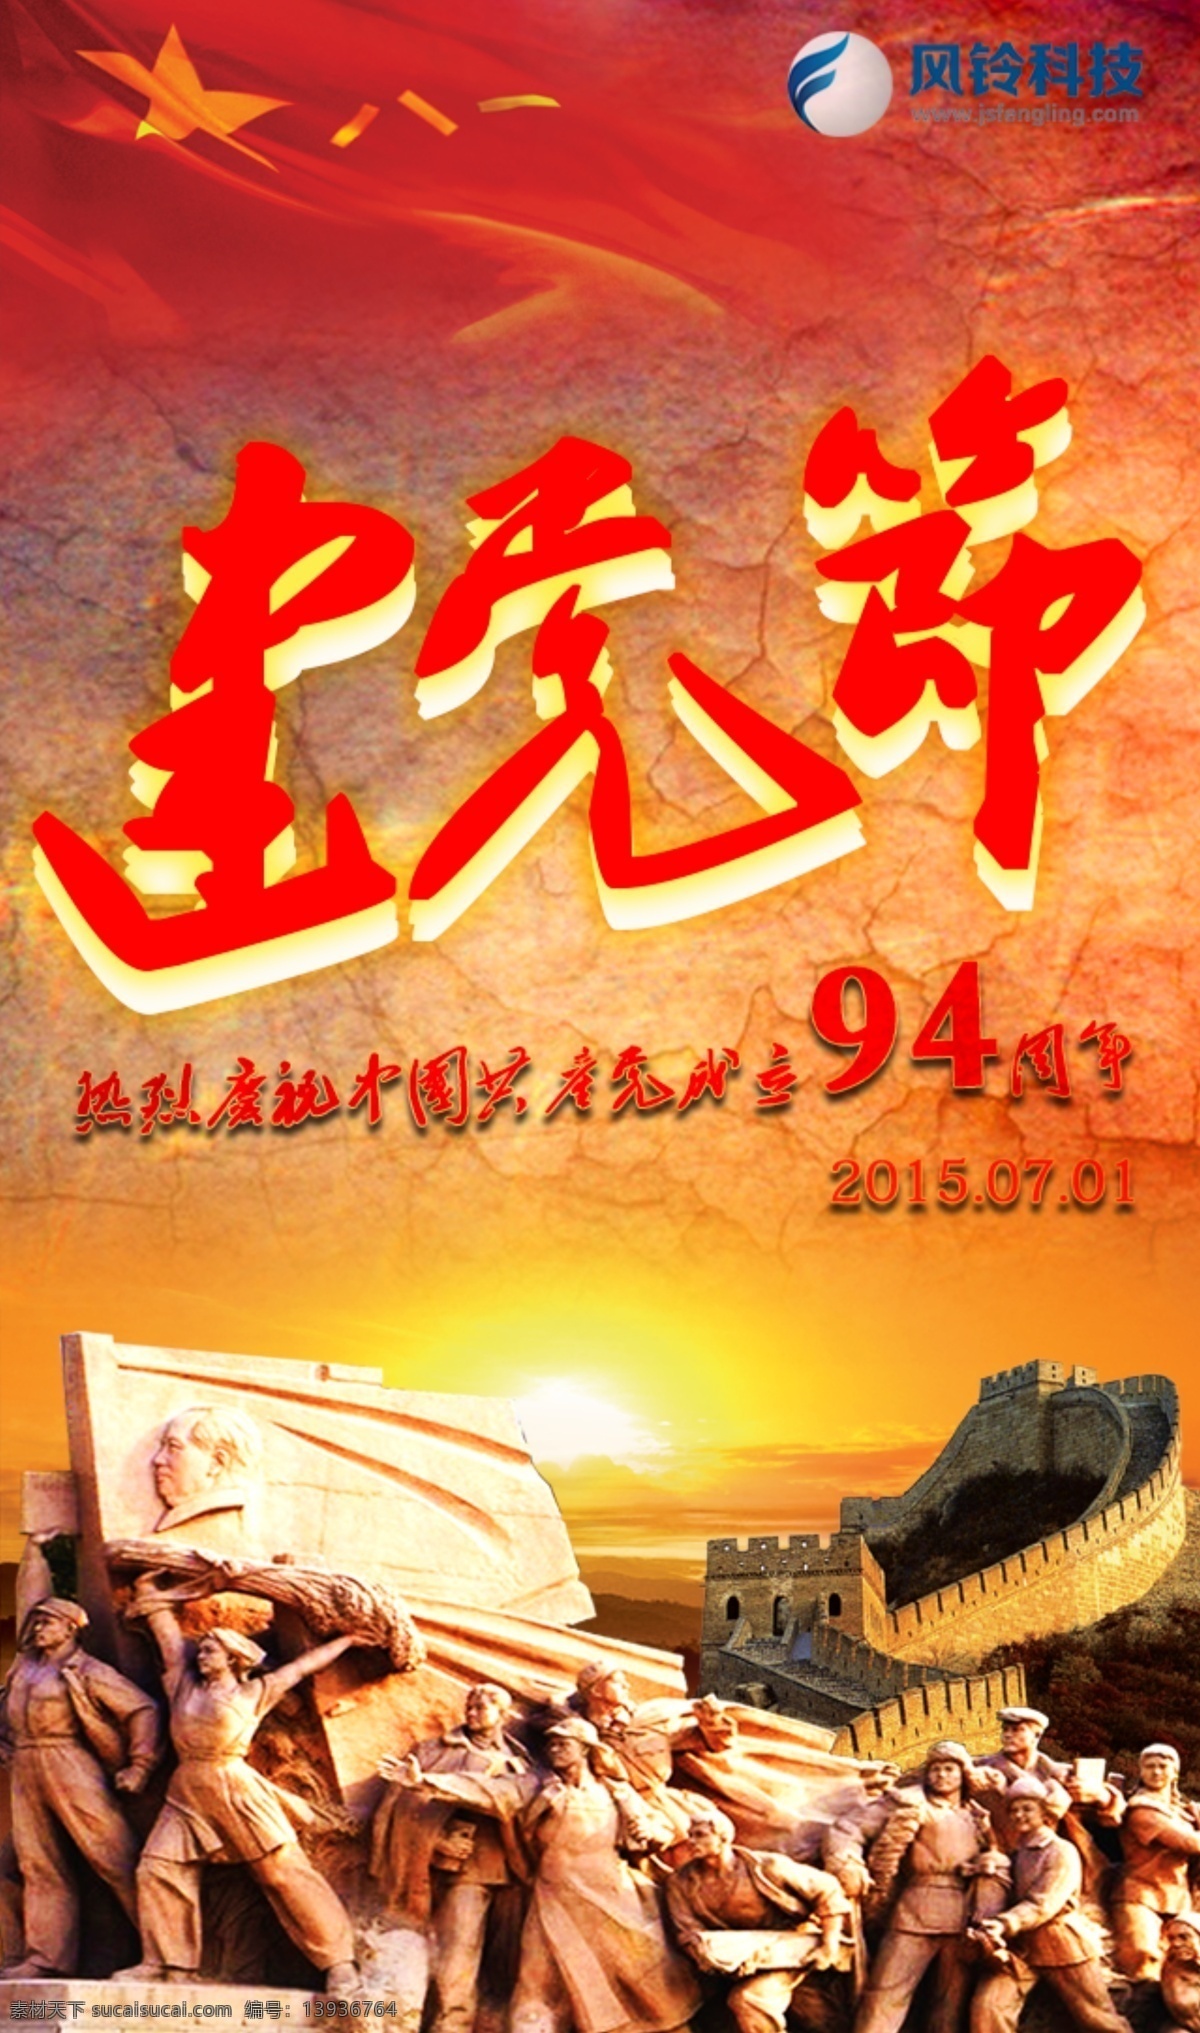 建党节 94周年 节日 海报 原创 文化艺术 节日庆祝